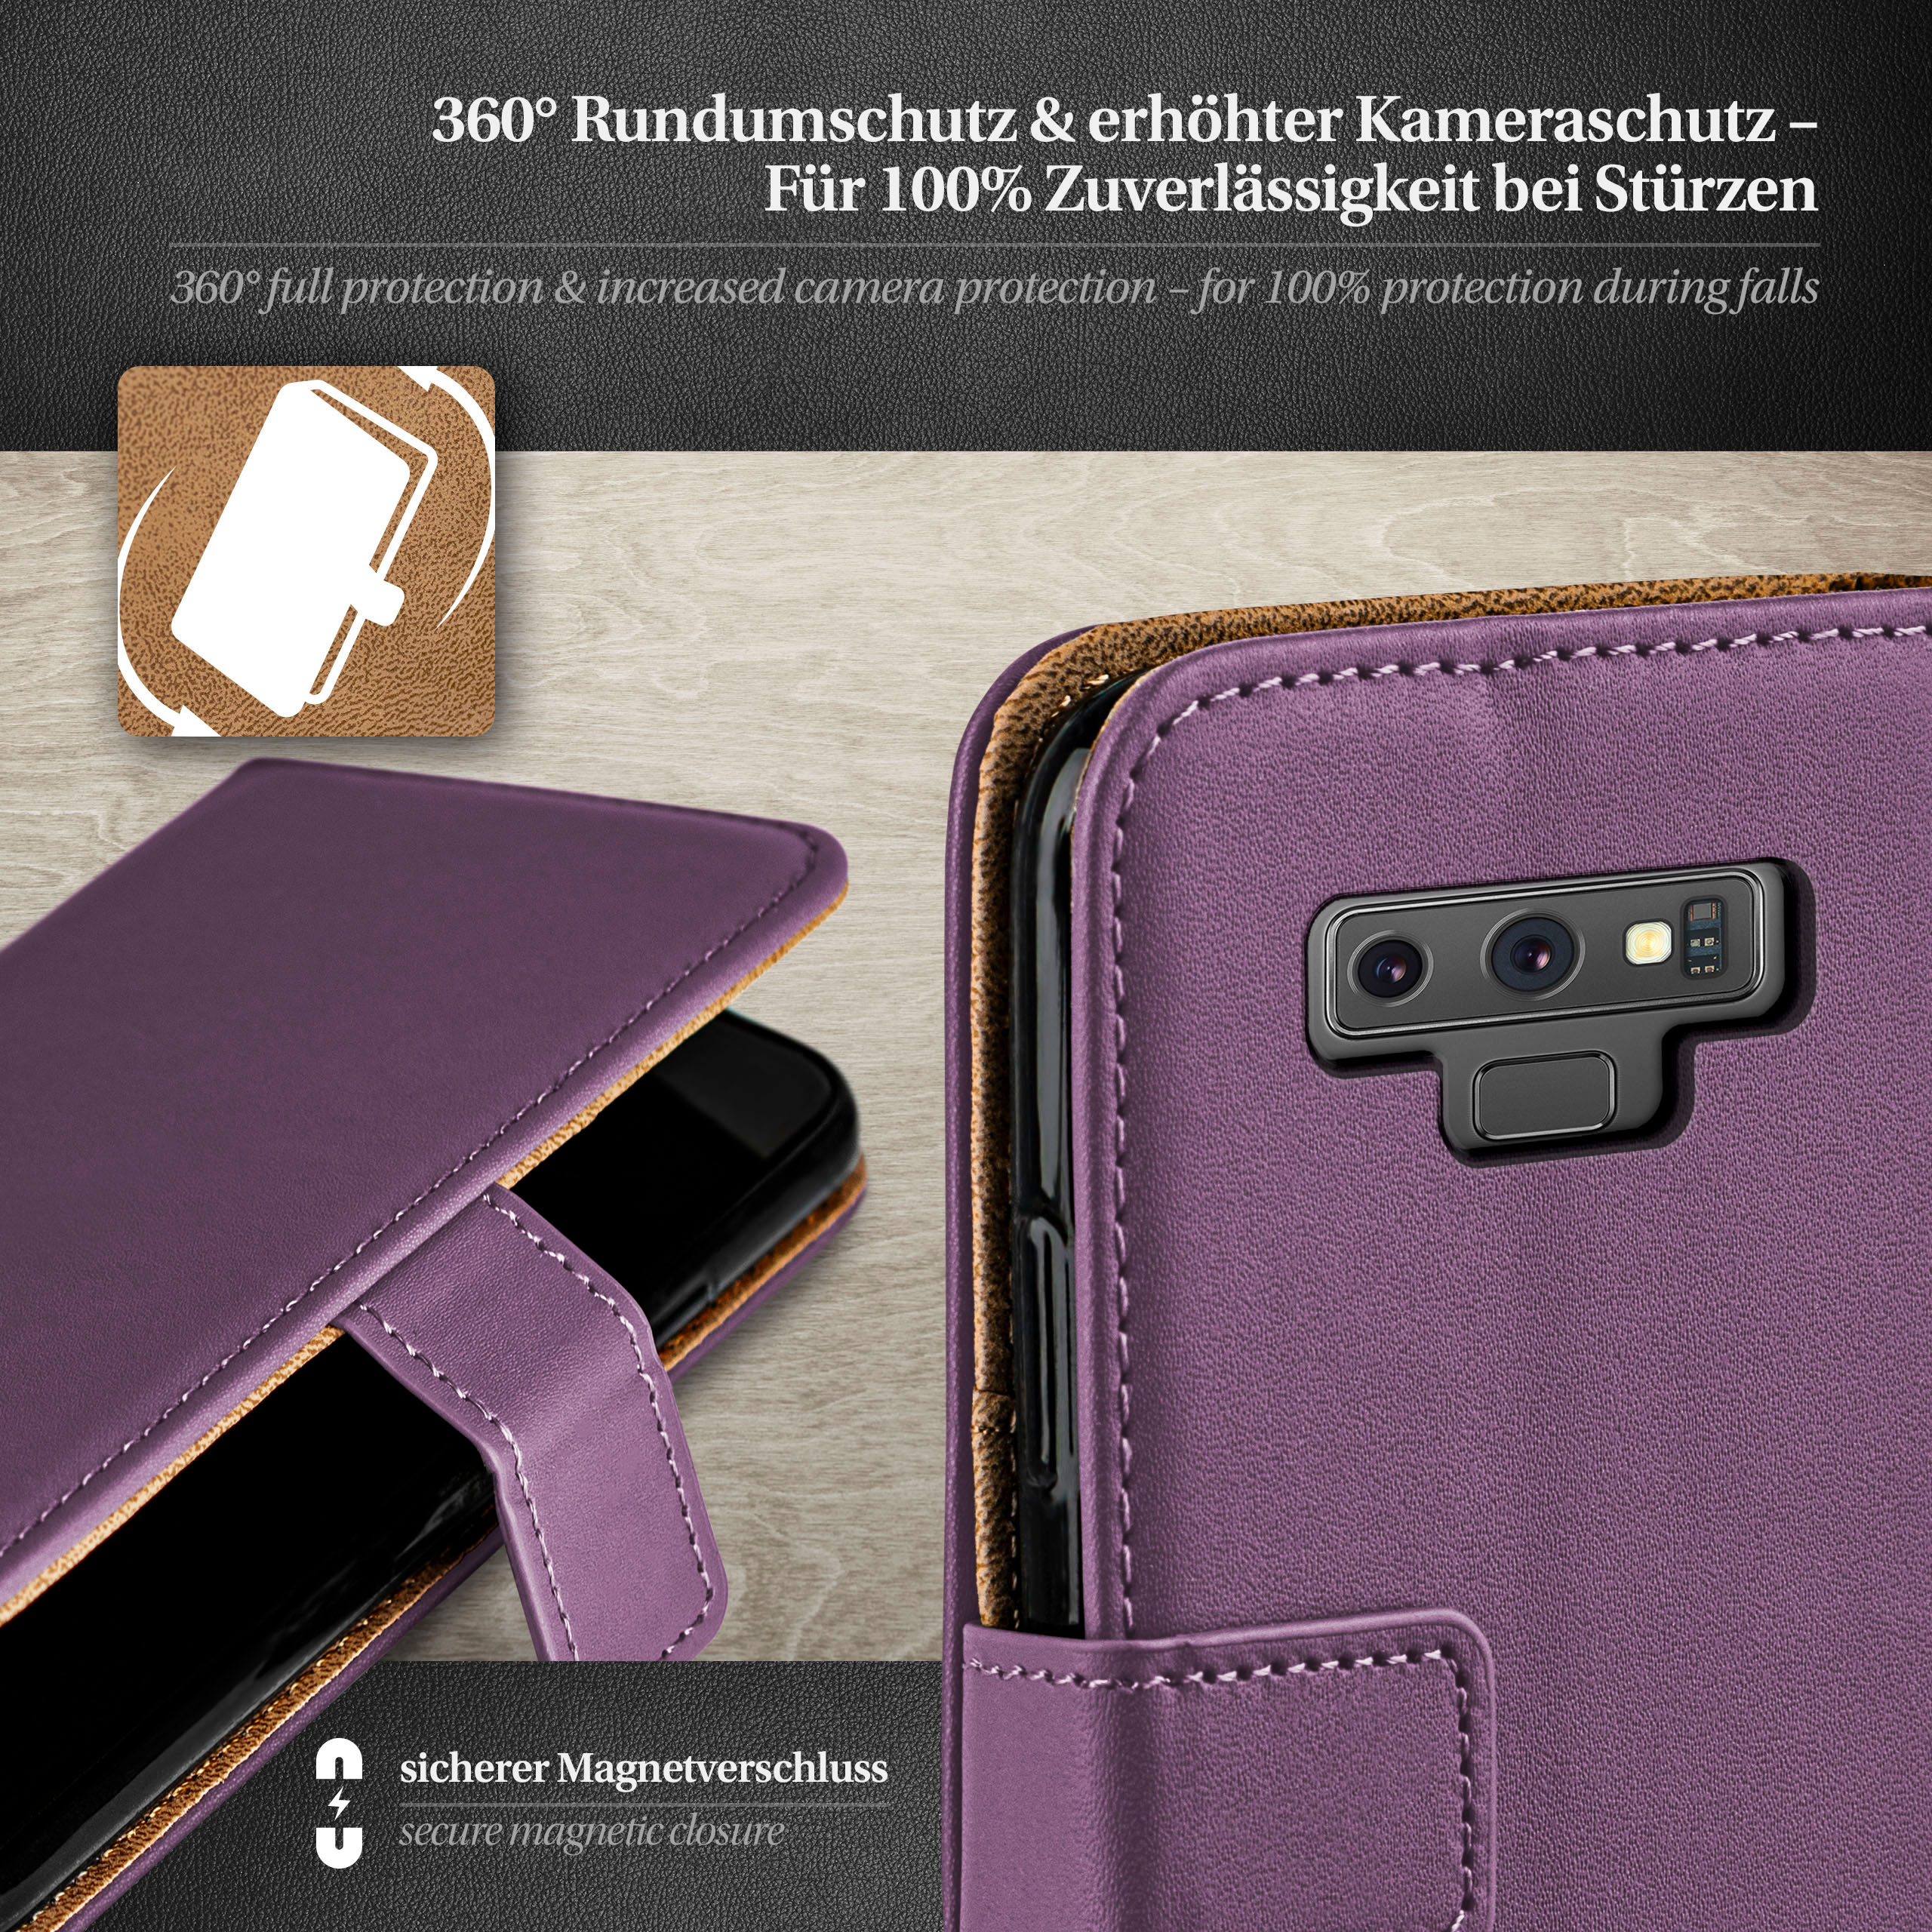 Bookcover, Samsung, Book MOEX 9, Galaxy Note Case, Indigo-Violet